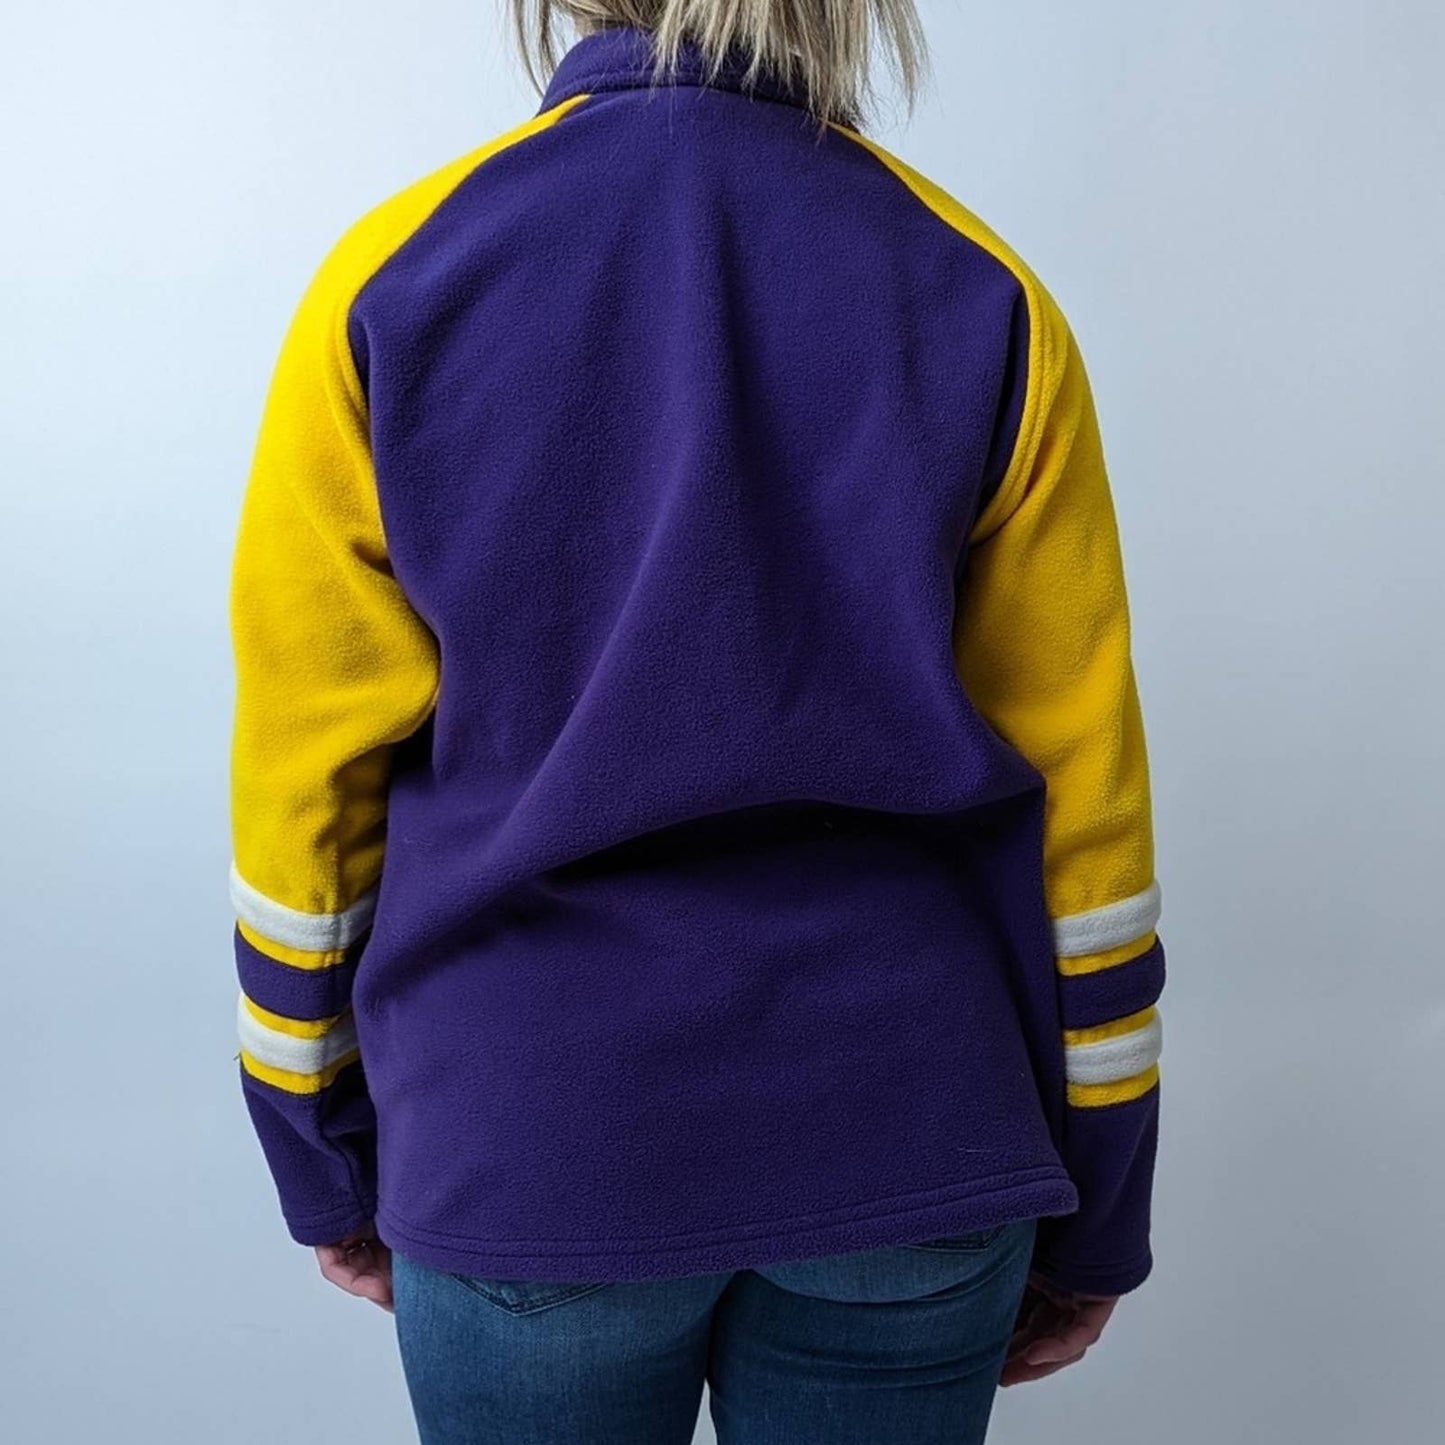 Minnesota Vikings NFL Football Pullover Fleece Sweatshirt